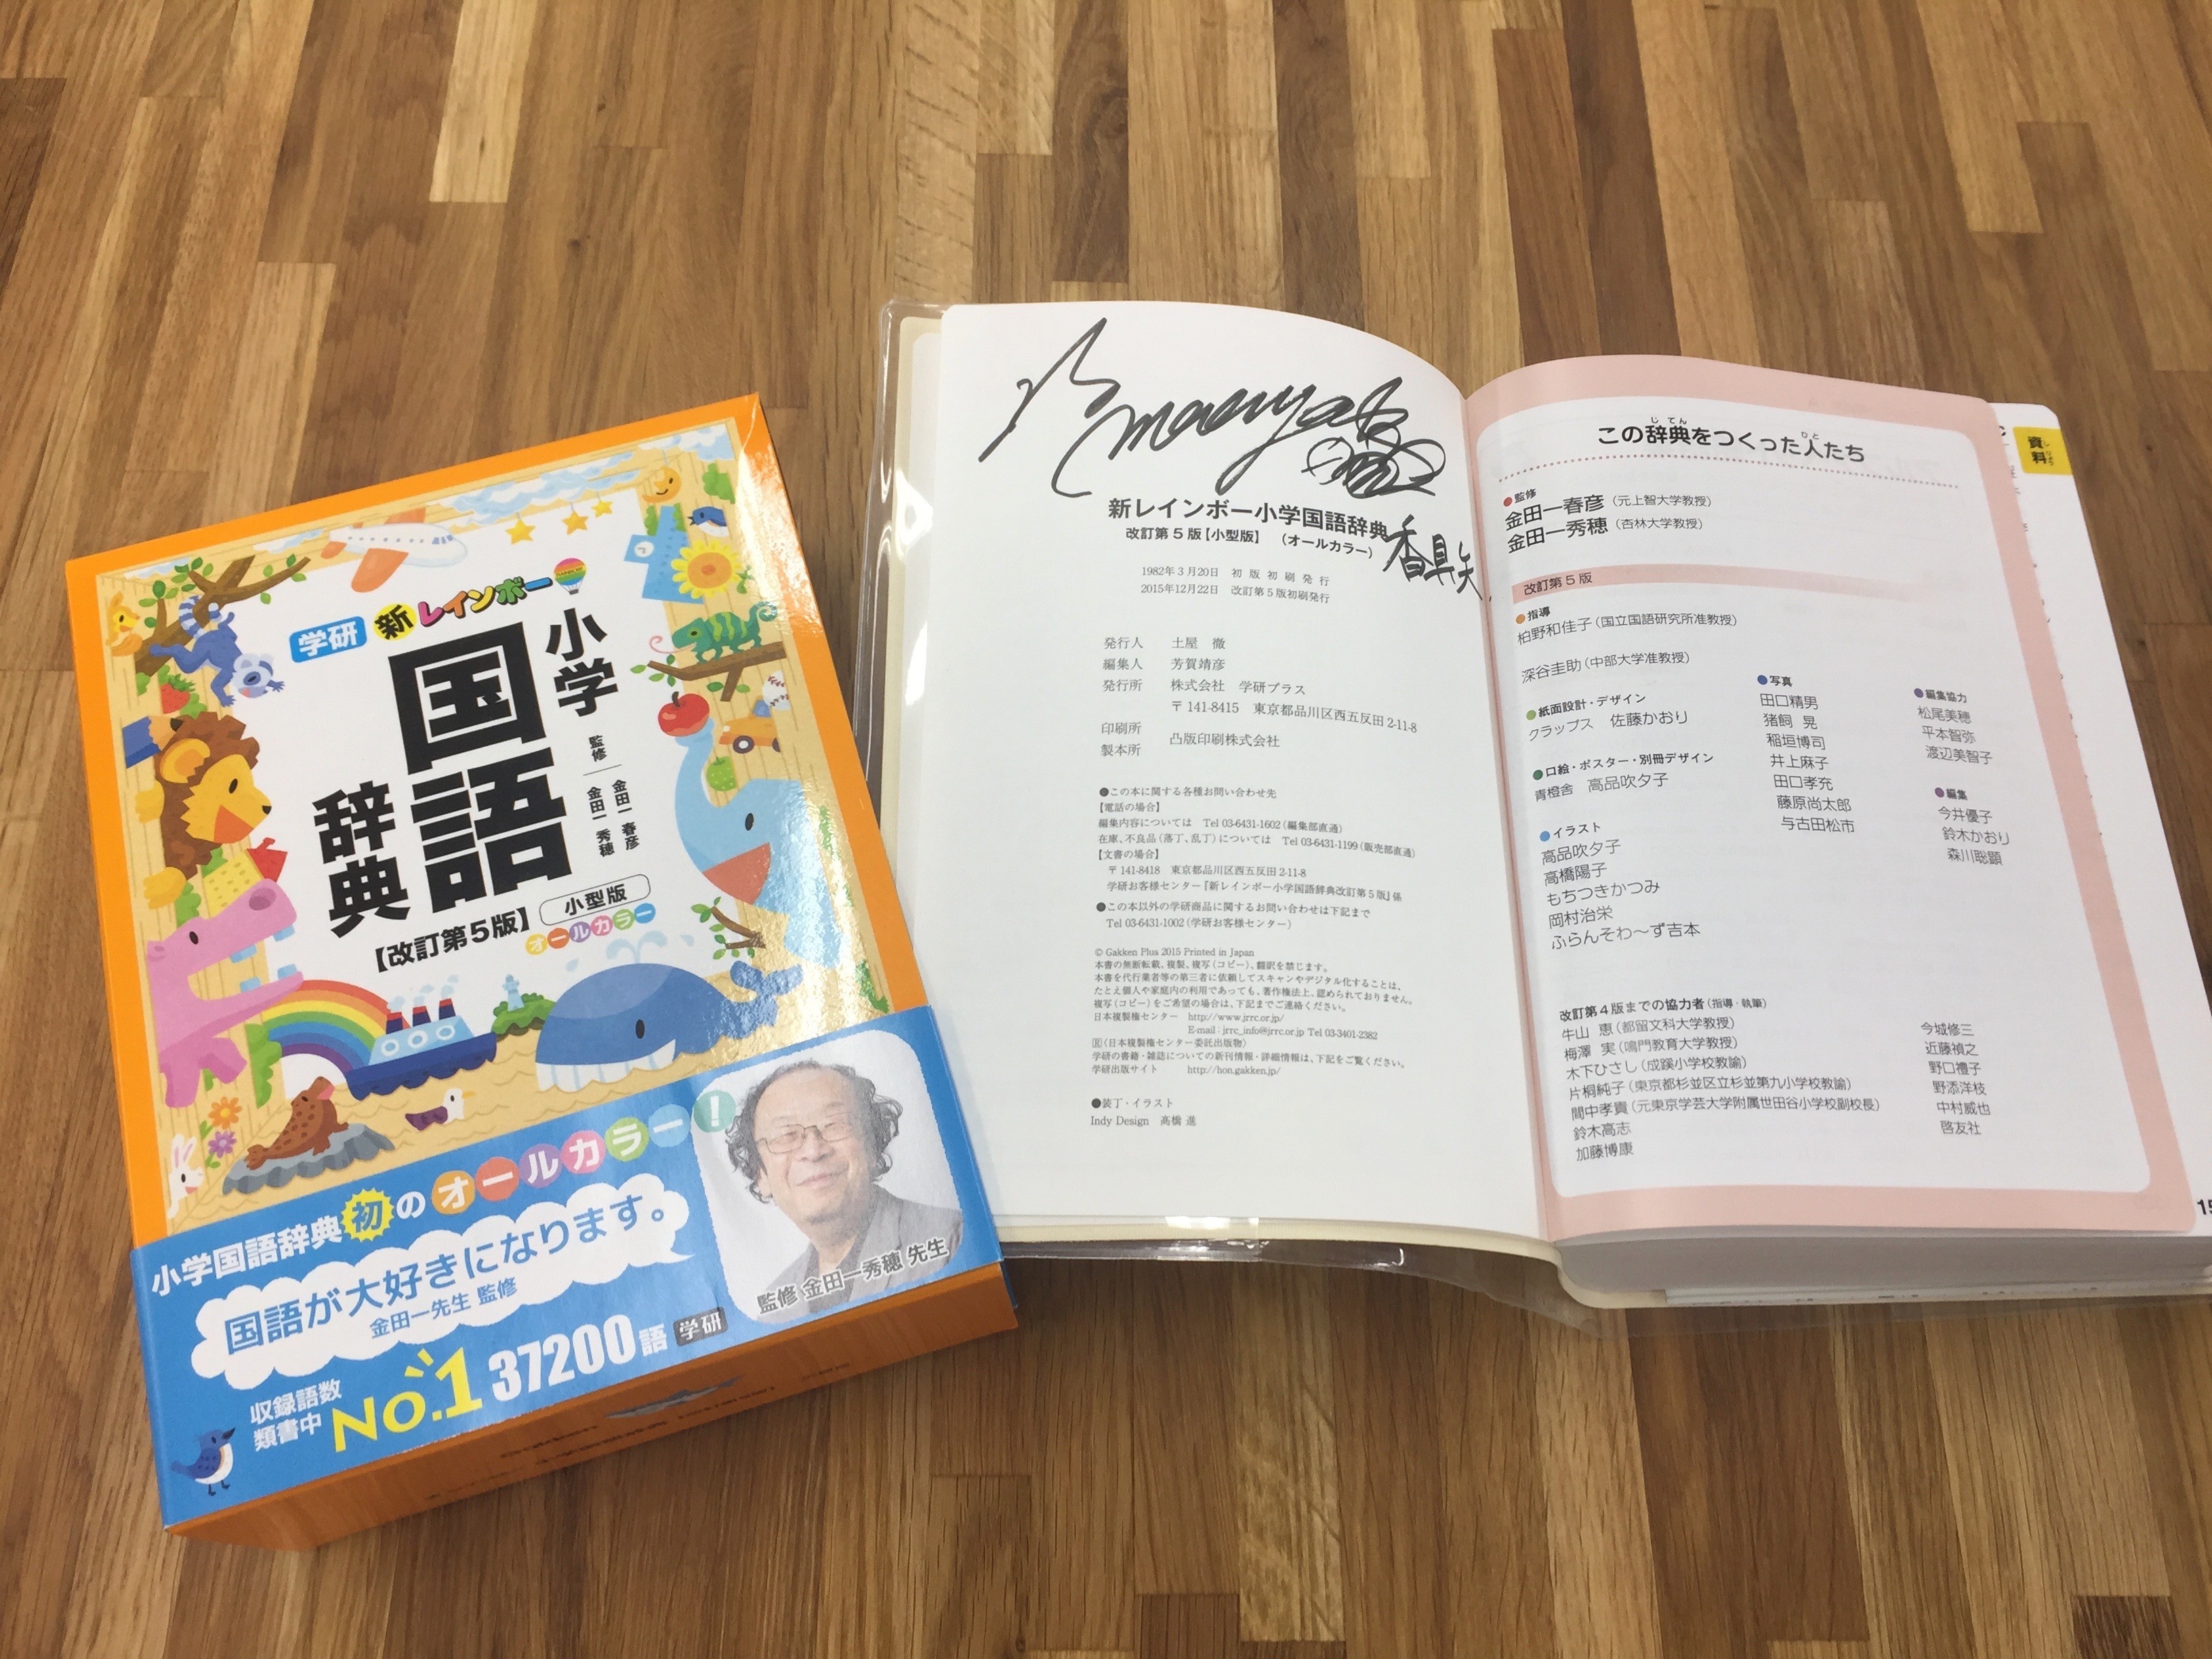 寄せ算 (よせざん) - Japanese-English Dictionary - JapaneseClass.jp